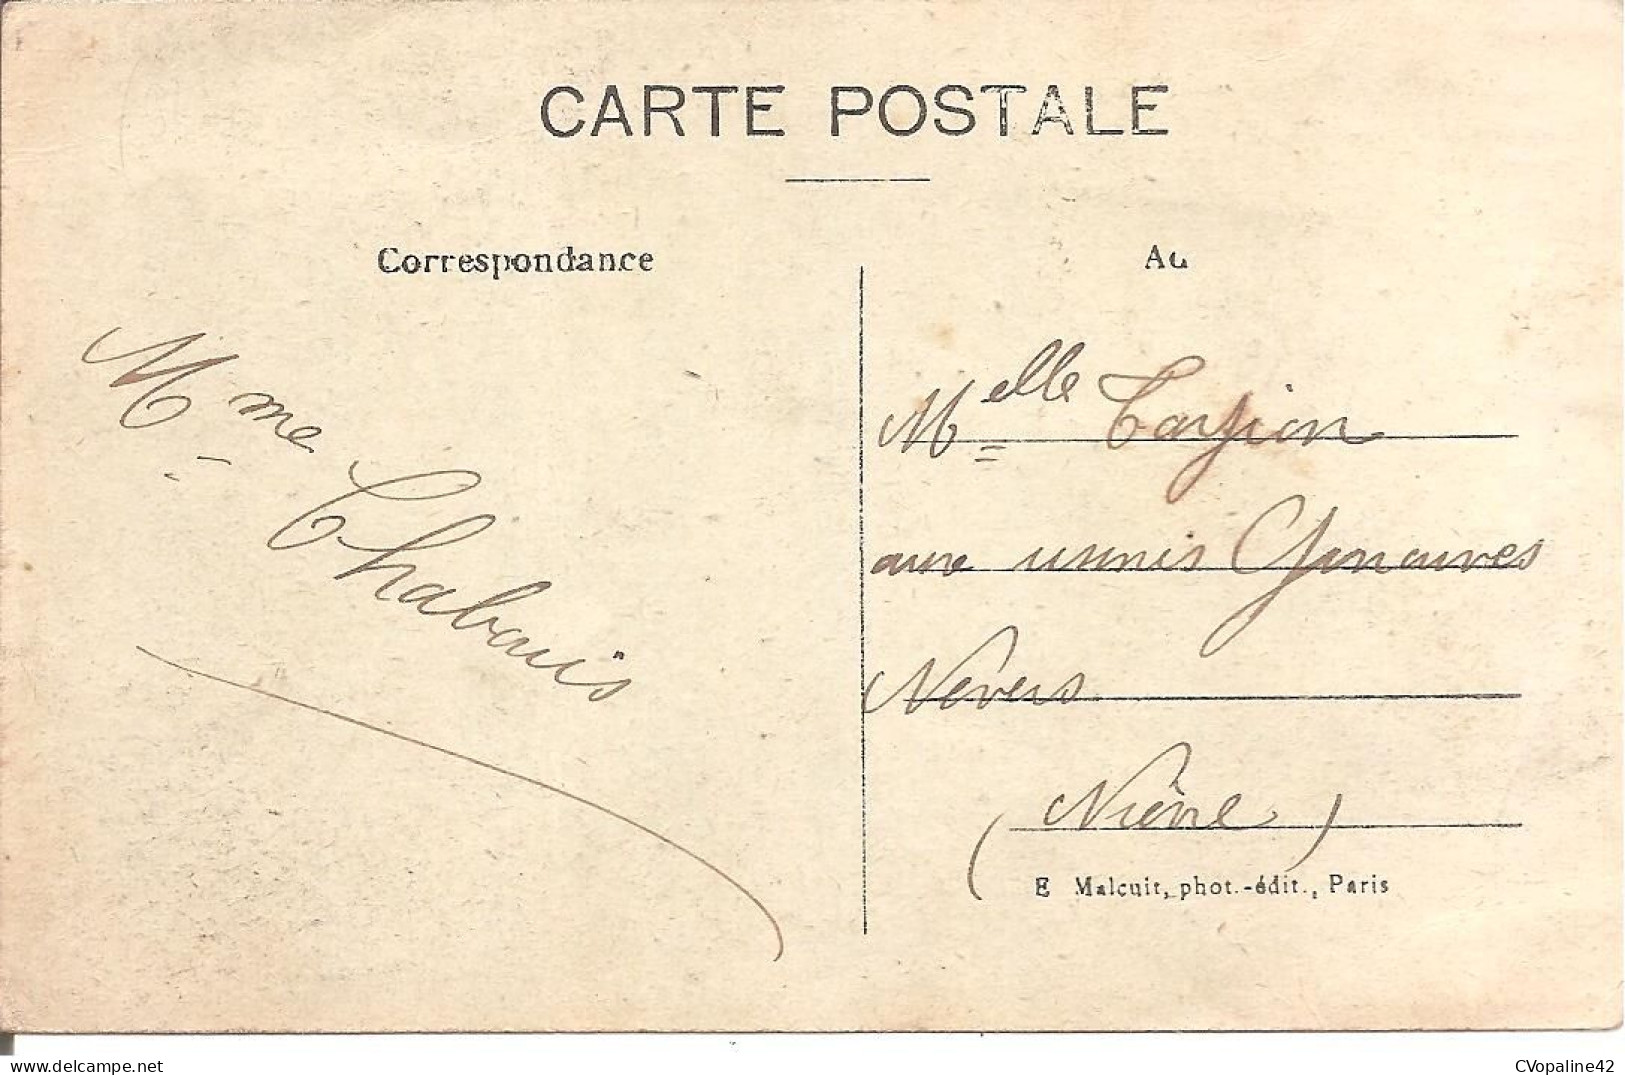 PENICHES - BATELLERIE - BOULOGNE-SUR-SEINE (92) Les Bords De La Seine En 1918 - Binnenschepen